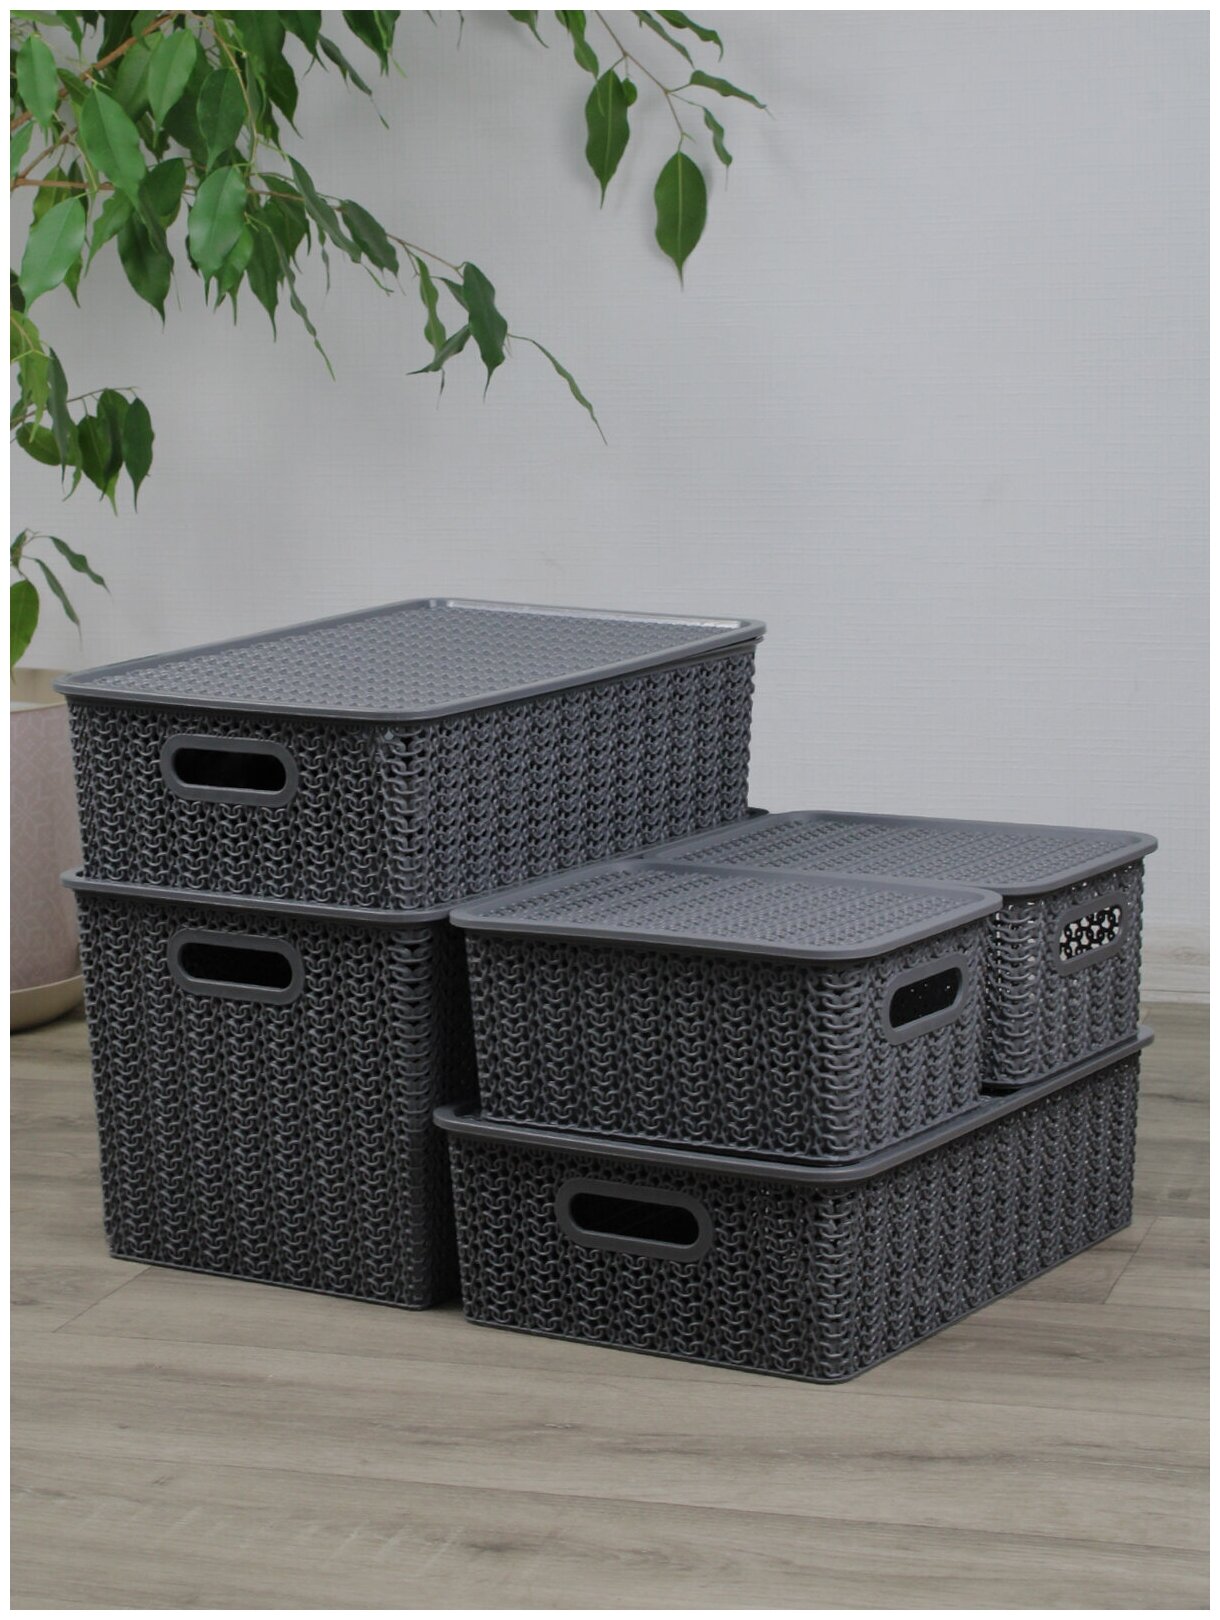 Набор из 5 корзин для хранения Вязь с крышкой 14л - 1 шт, 7,5л - 2 шт, 3л - 2 шт / контейнер / хозяйственная коробка, цвет серый